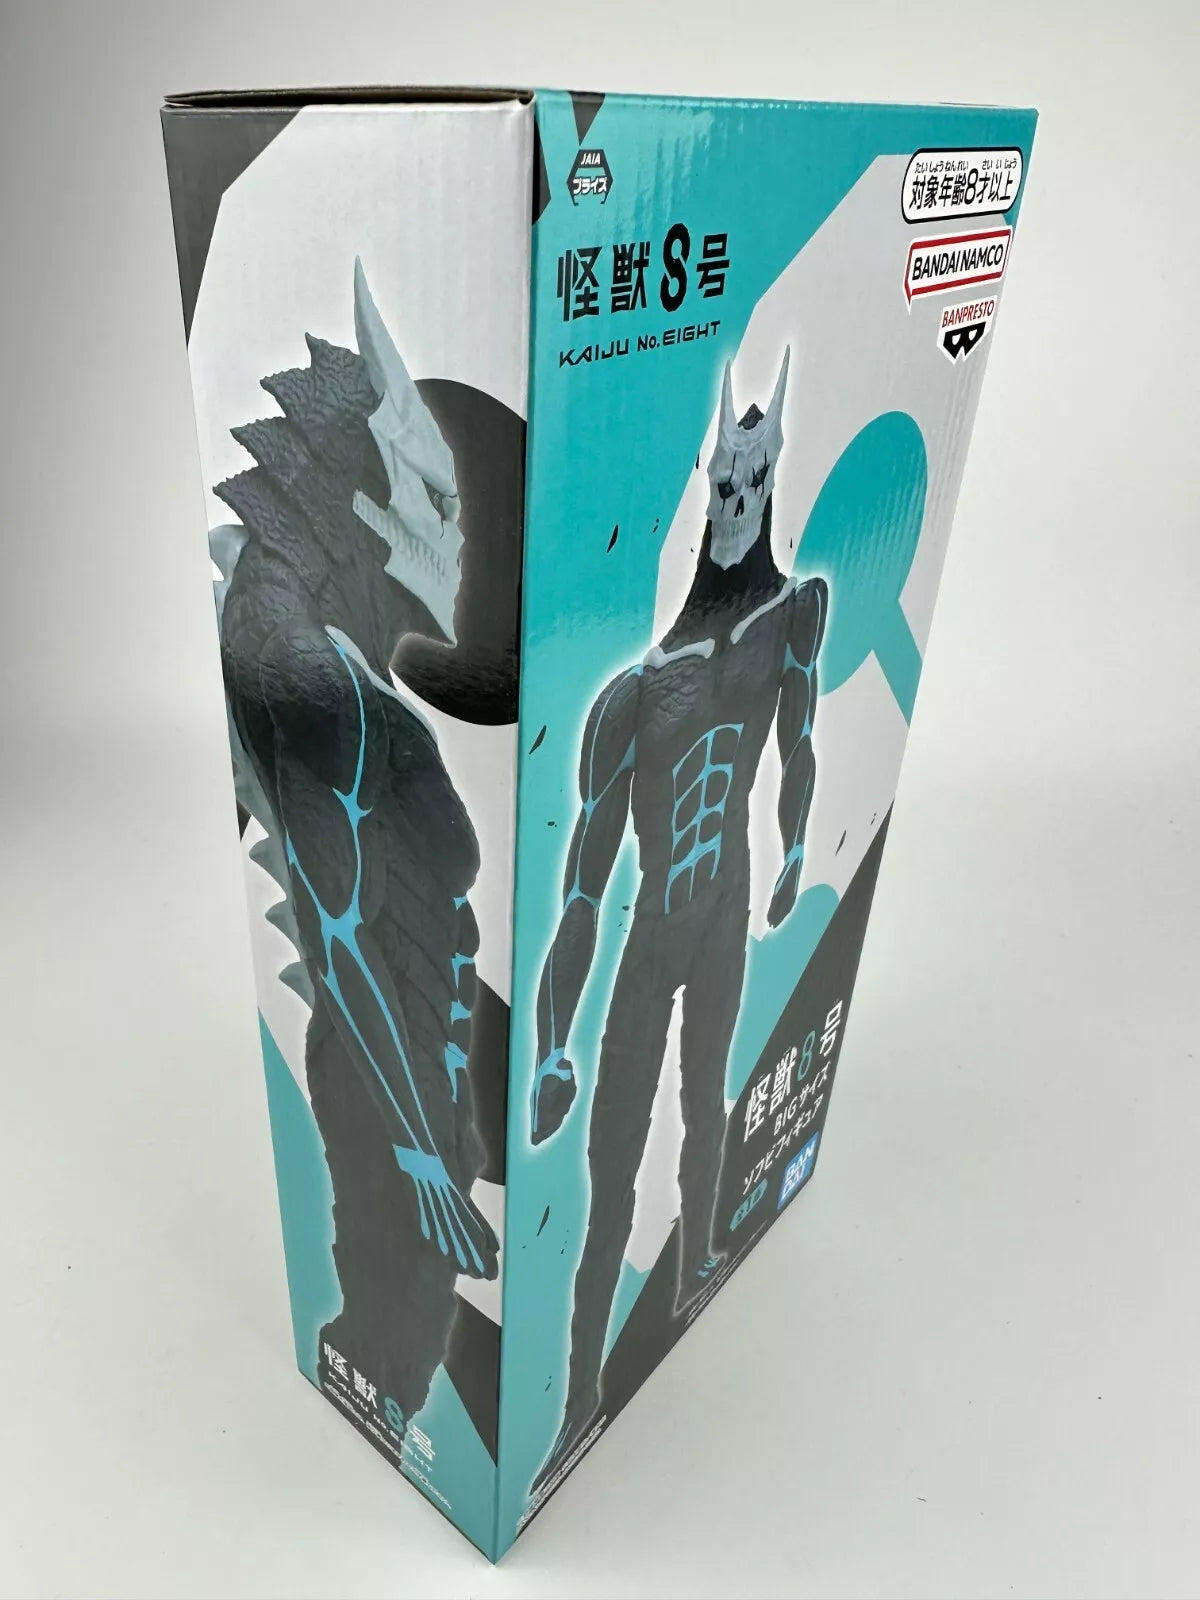 Kaiju - Kaiju No.8 Action Figure Bandai Banpresto Big Size Sofubi